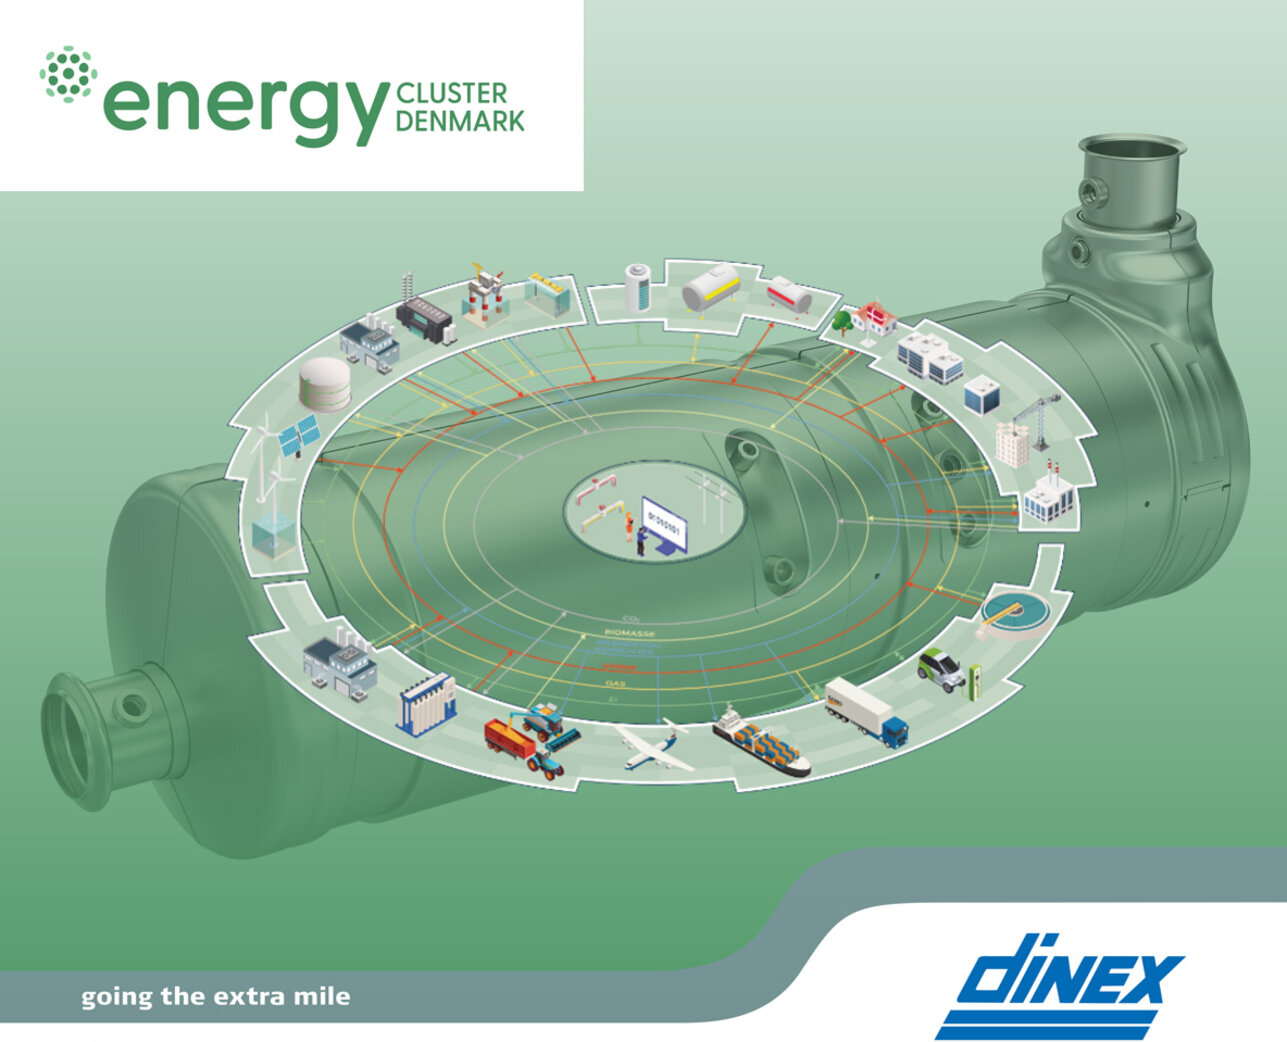 Dinex joins the Energy Cluster Denmark network